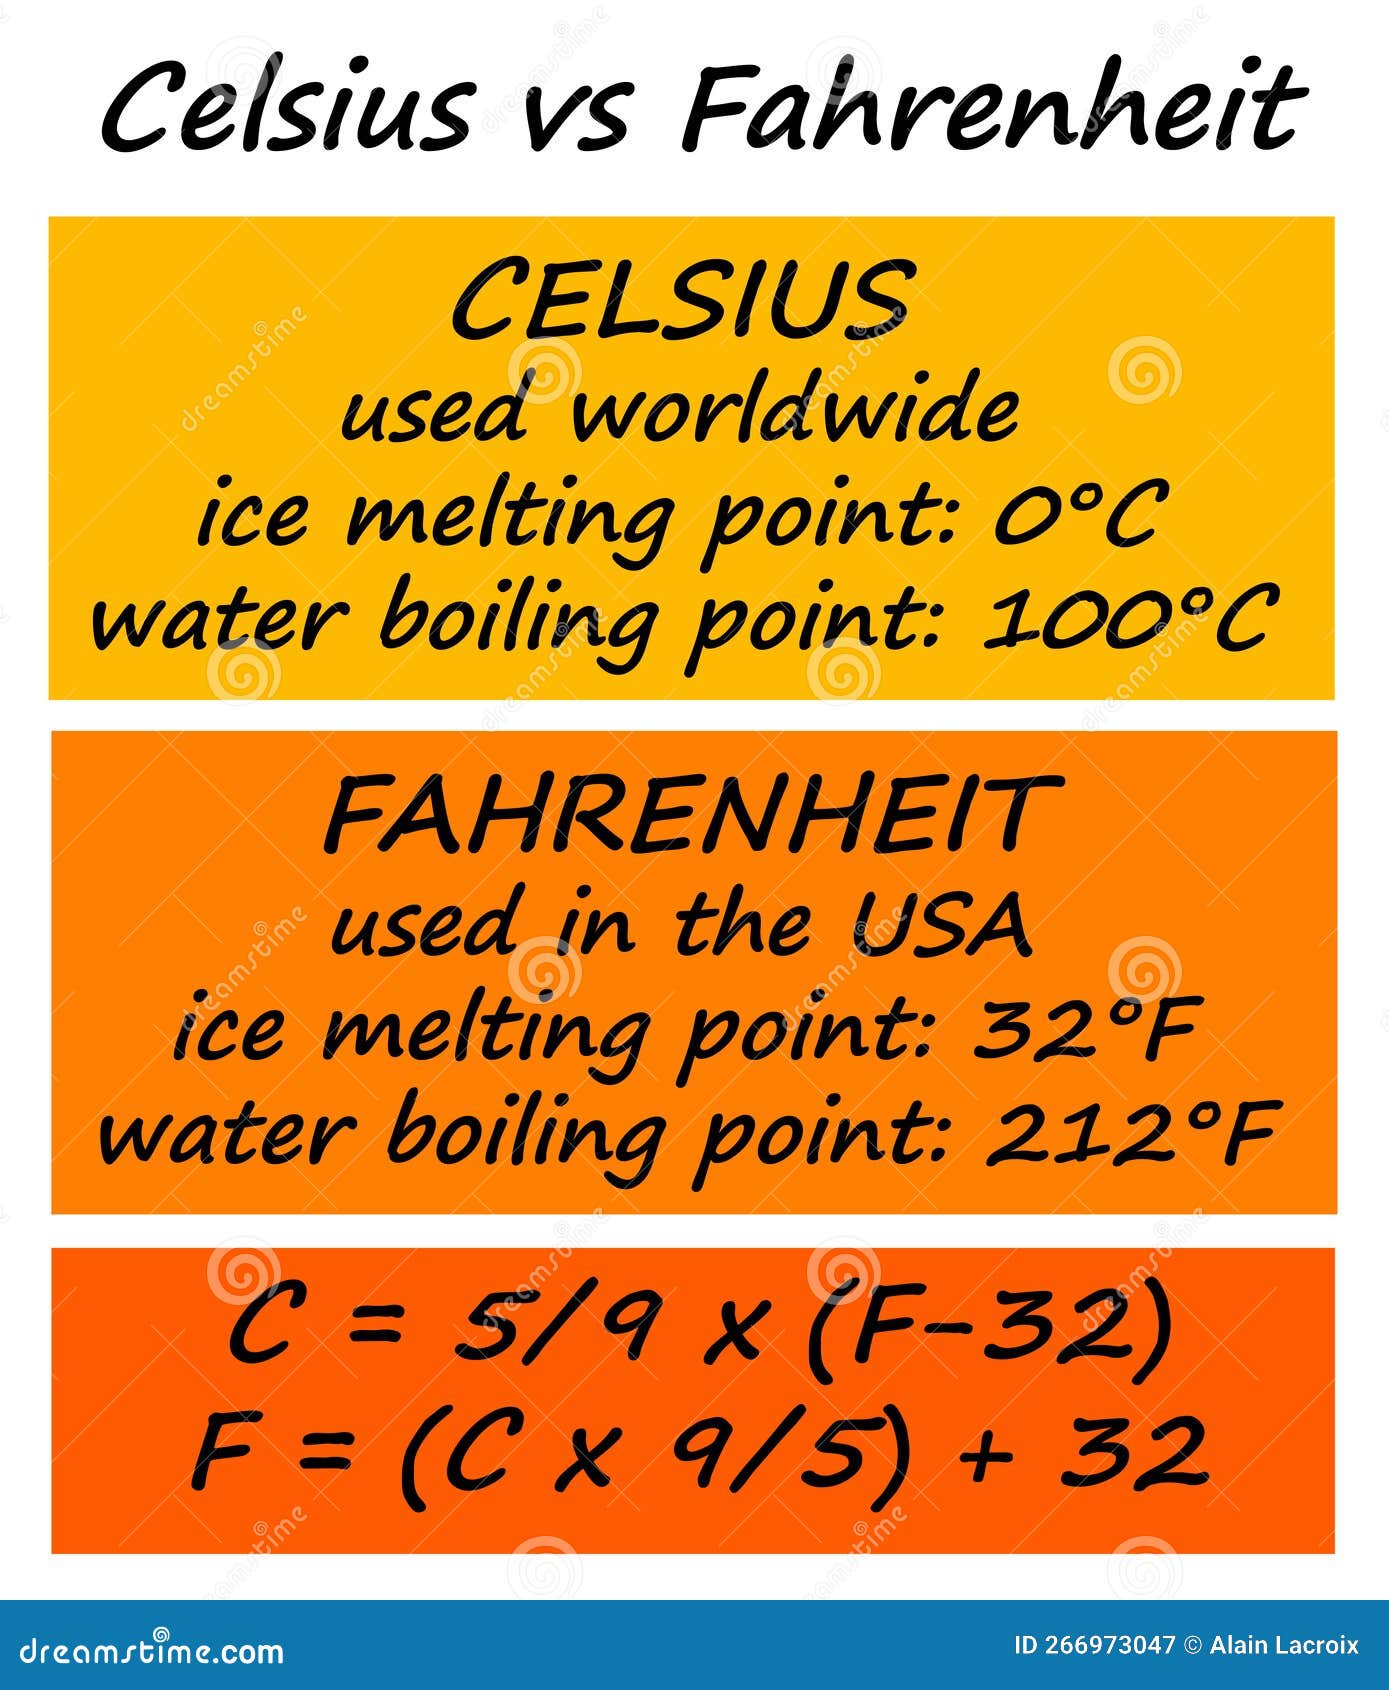 celsius to fahrenheit chart  Temperature chart, Temperature